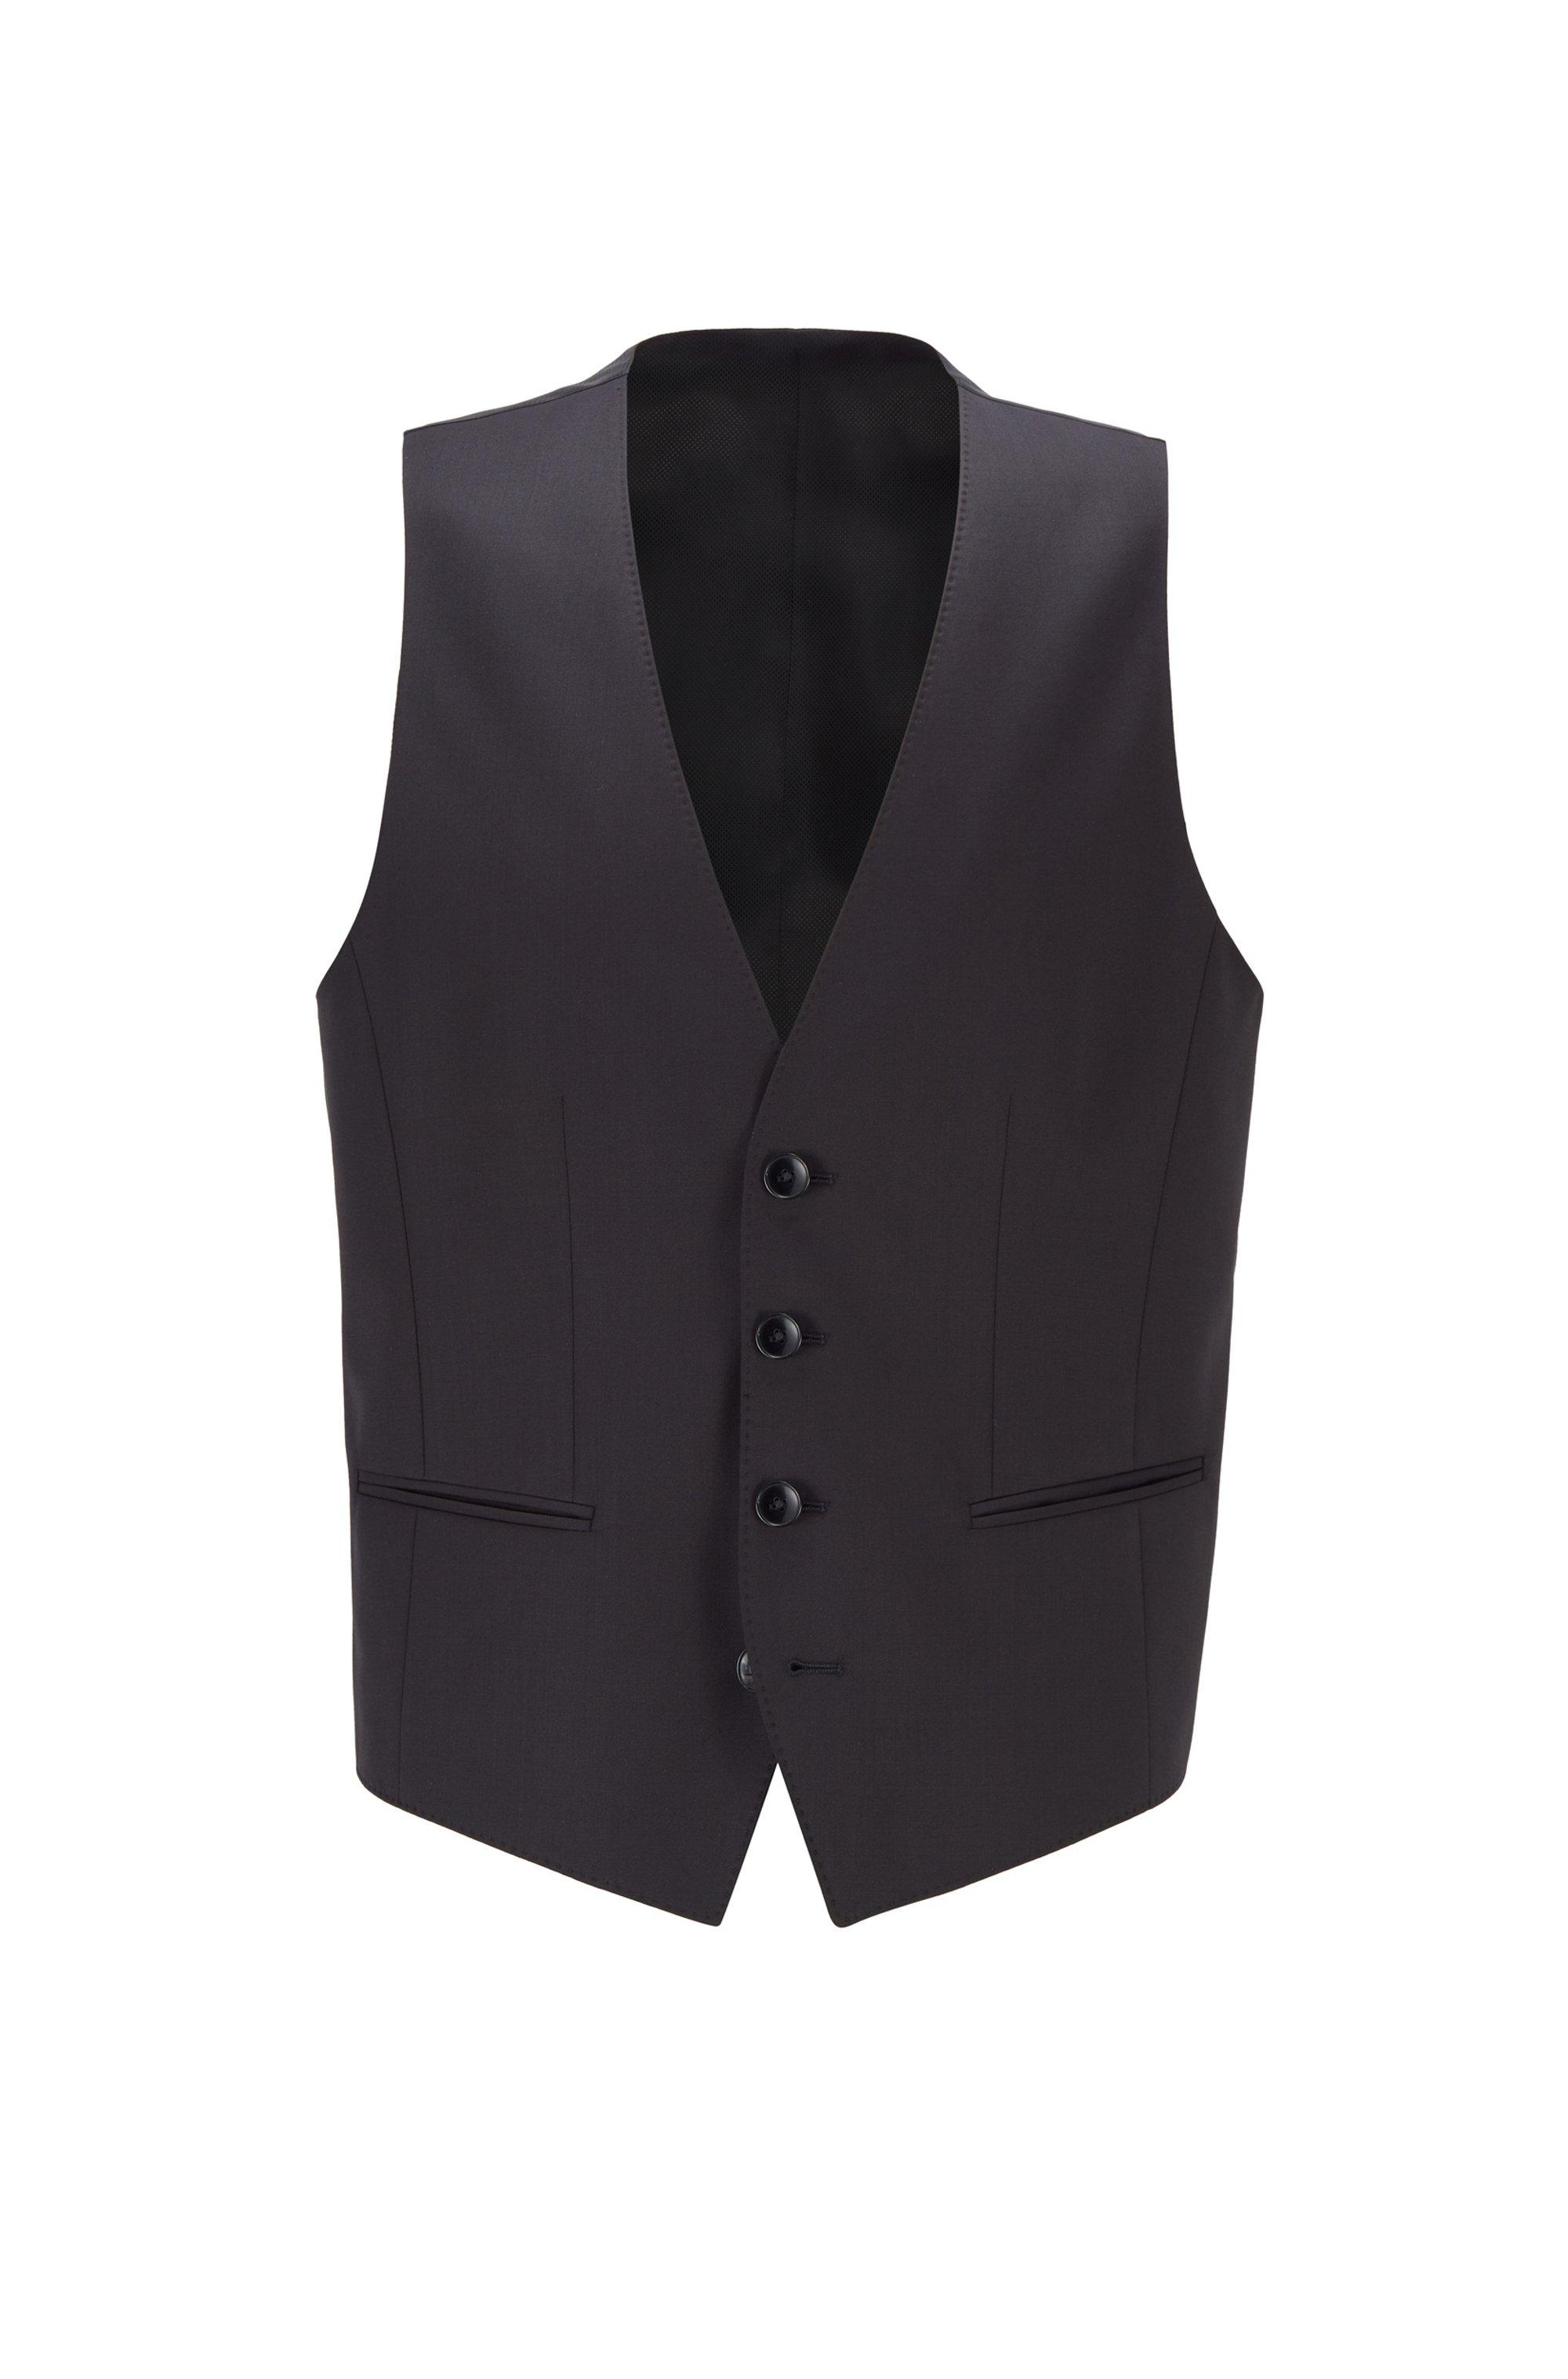 BOSS by HUGO BOSS Slim Fit Waistcoat In Virgin Wool in Black for Men - Lyst